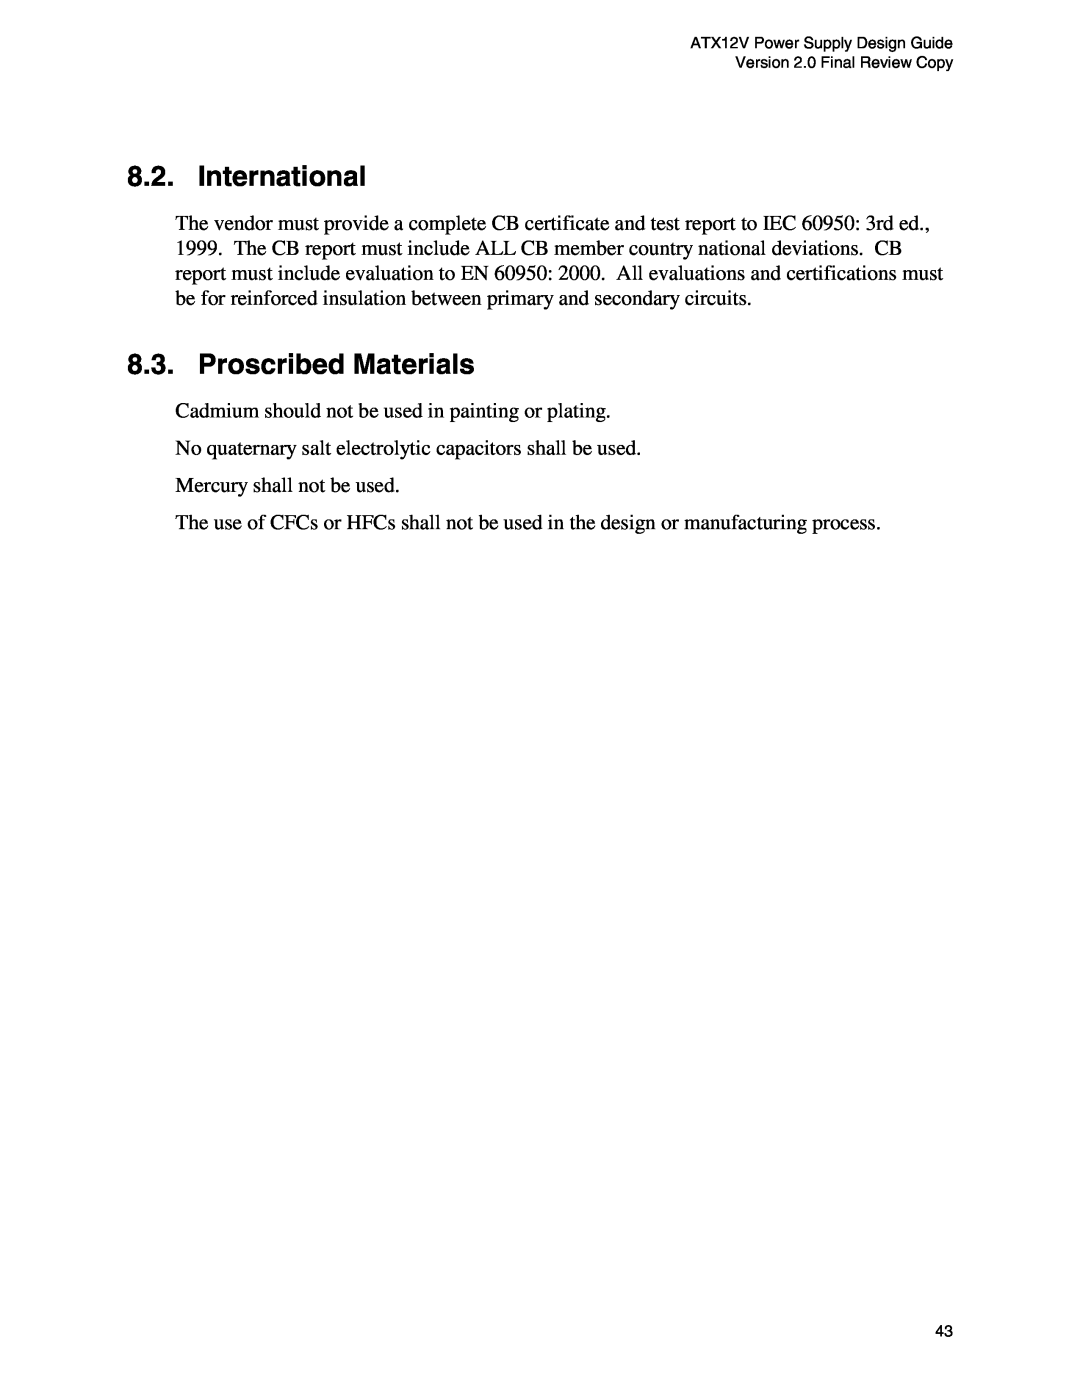 Intel ATX12V manual International, Proscribed Materials 